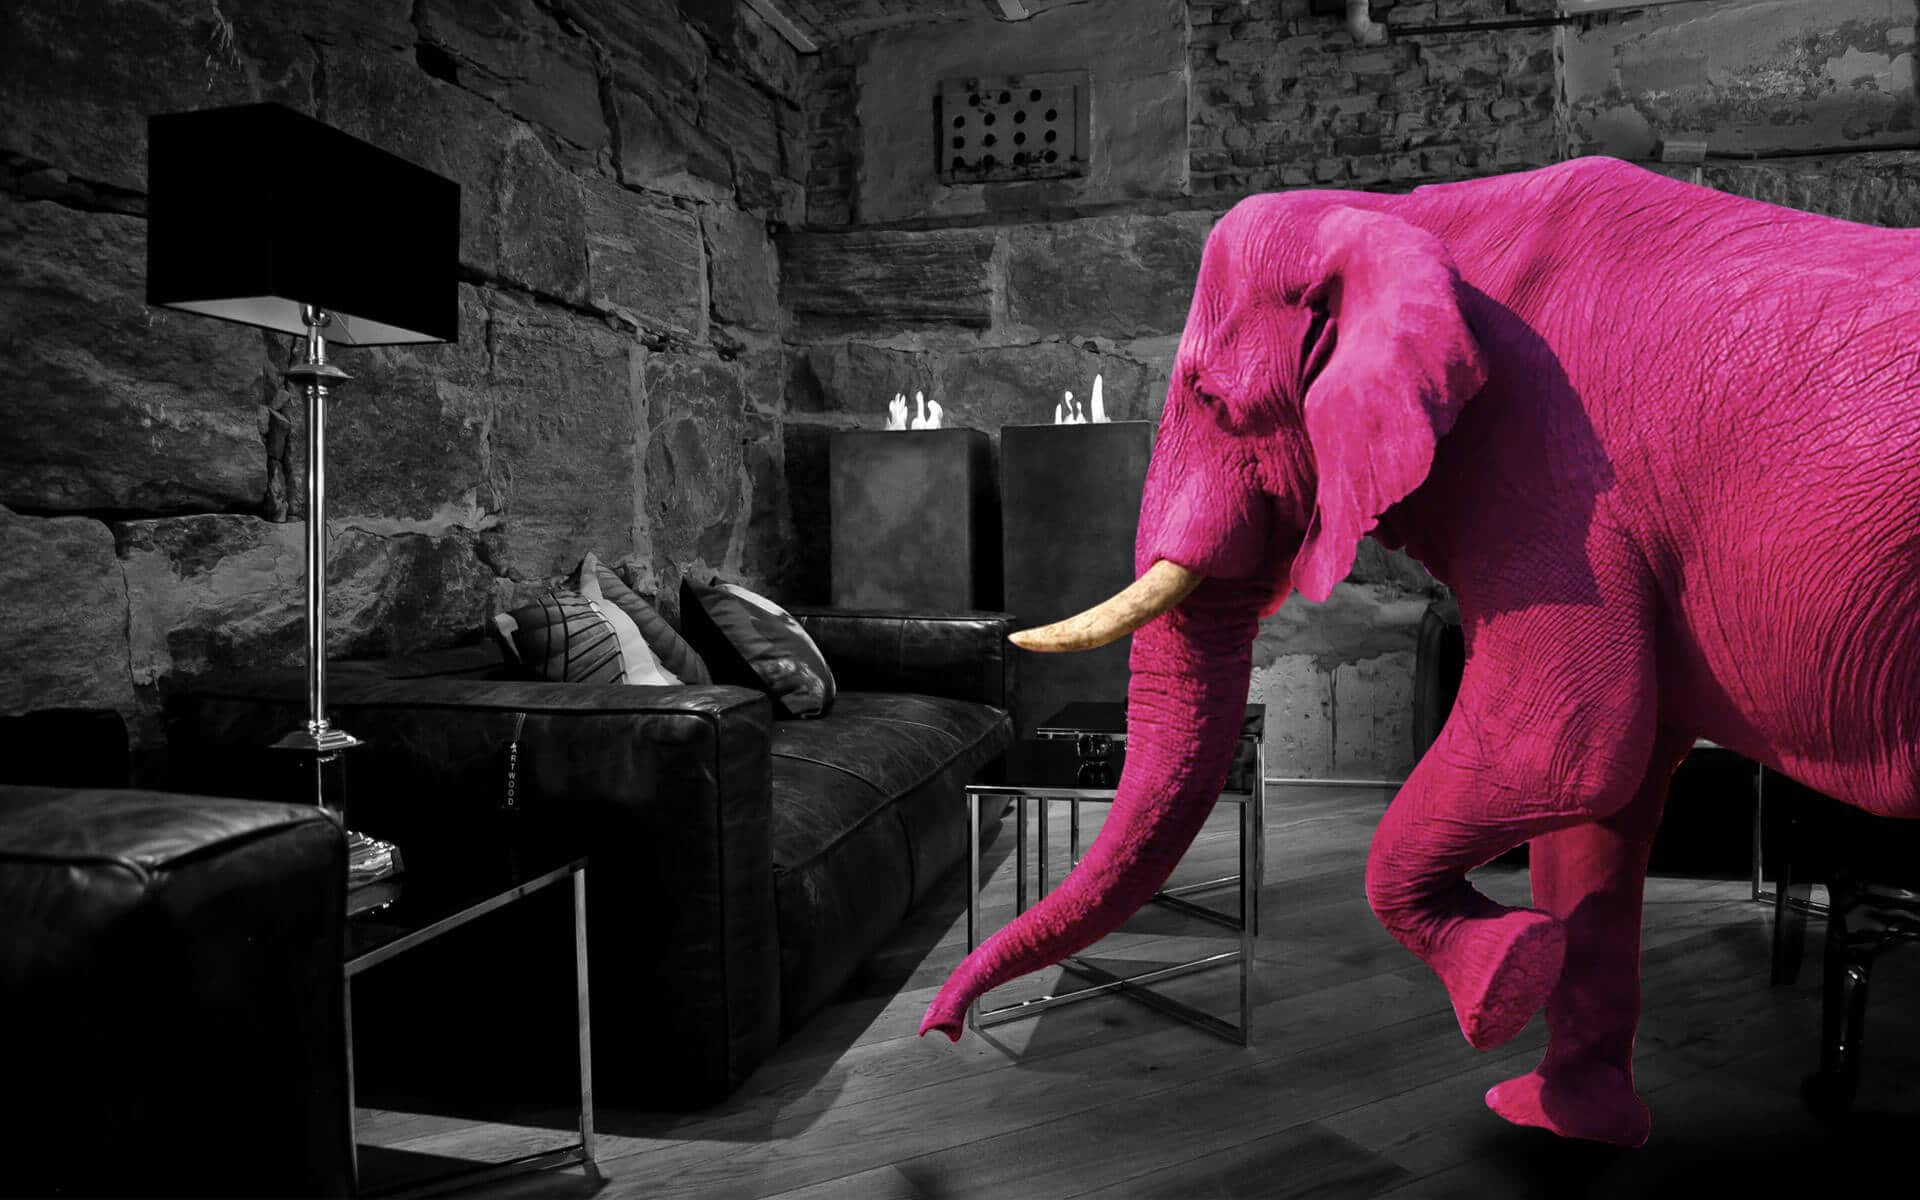 Pinkki norsu keskellä olohuonetta